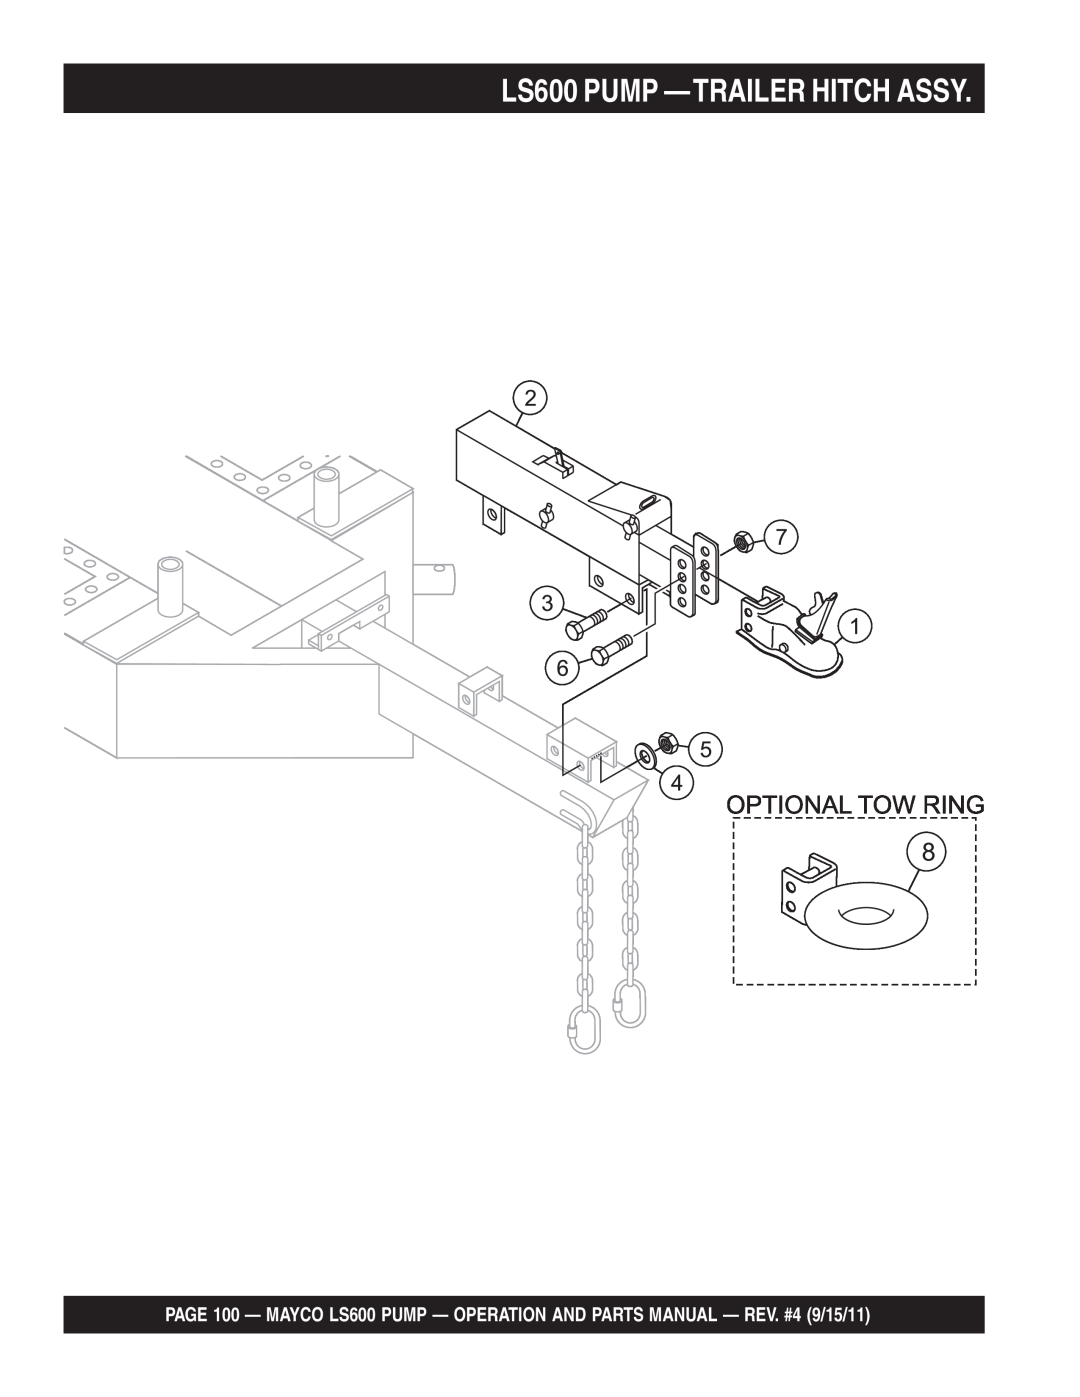 Multiquip manual LS600 PUMP —TRAILERHITCH ASSY 